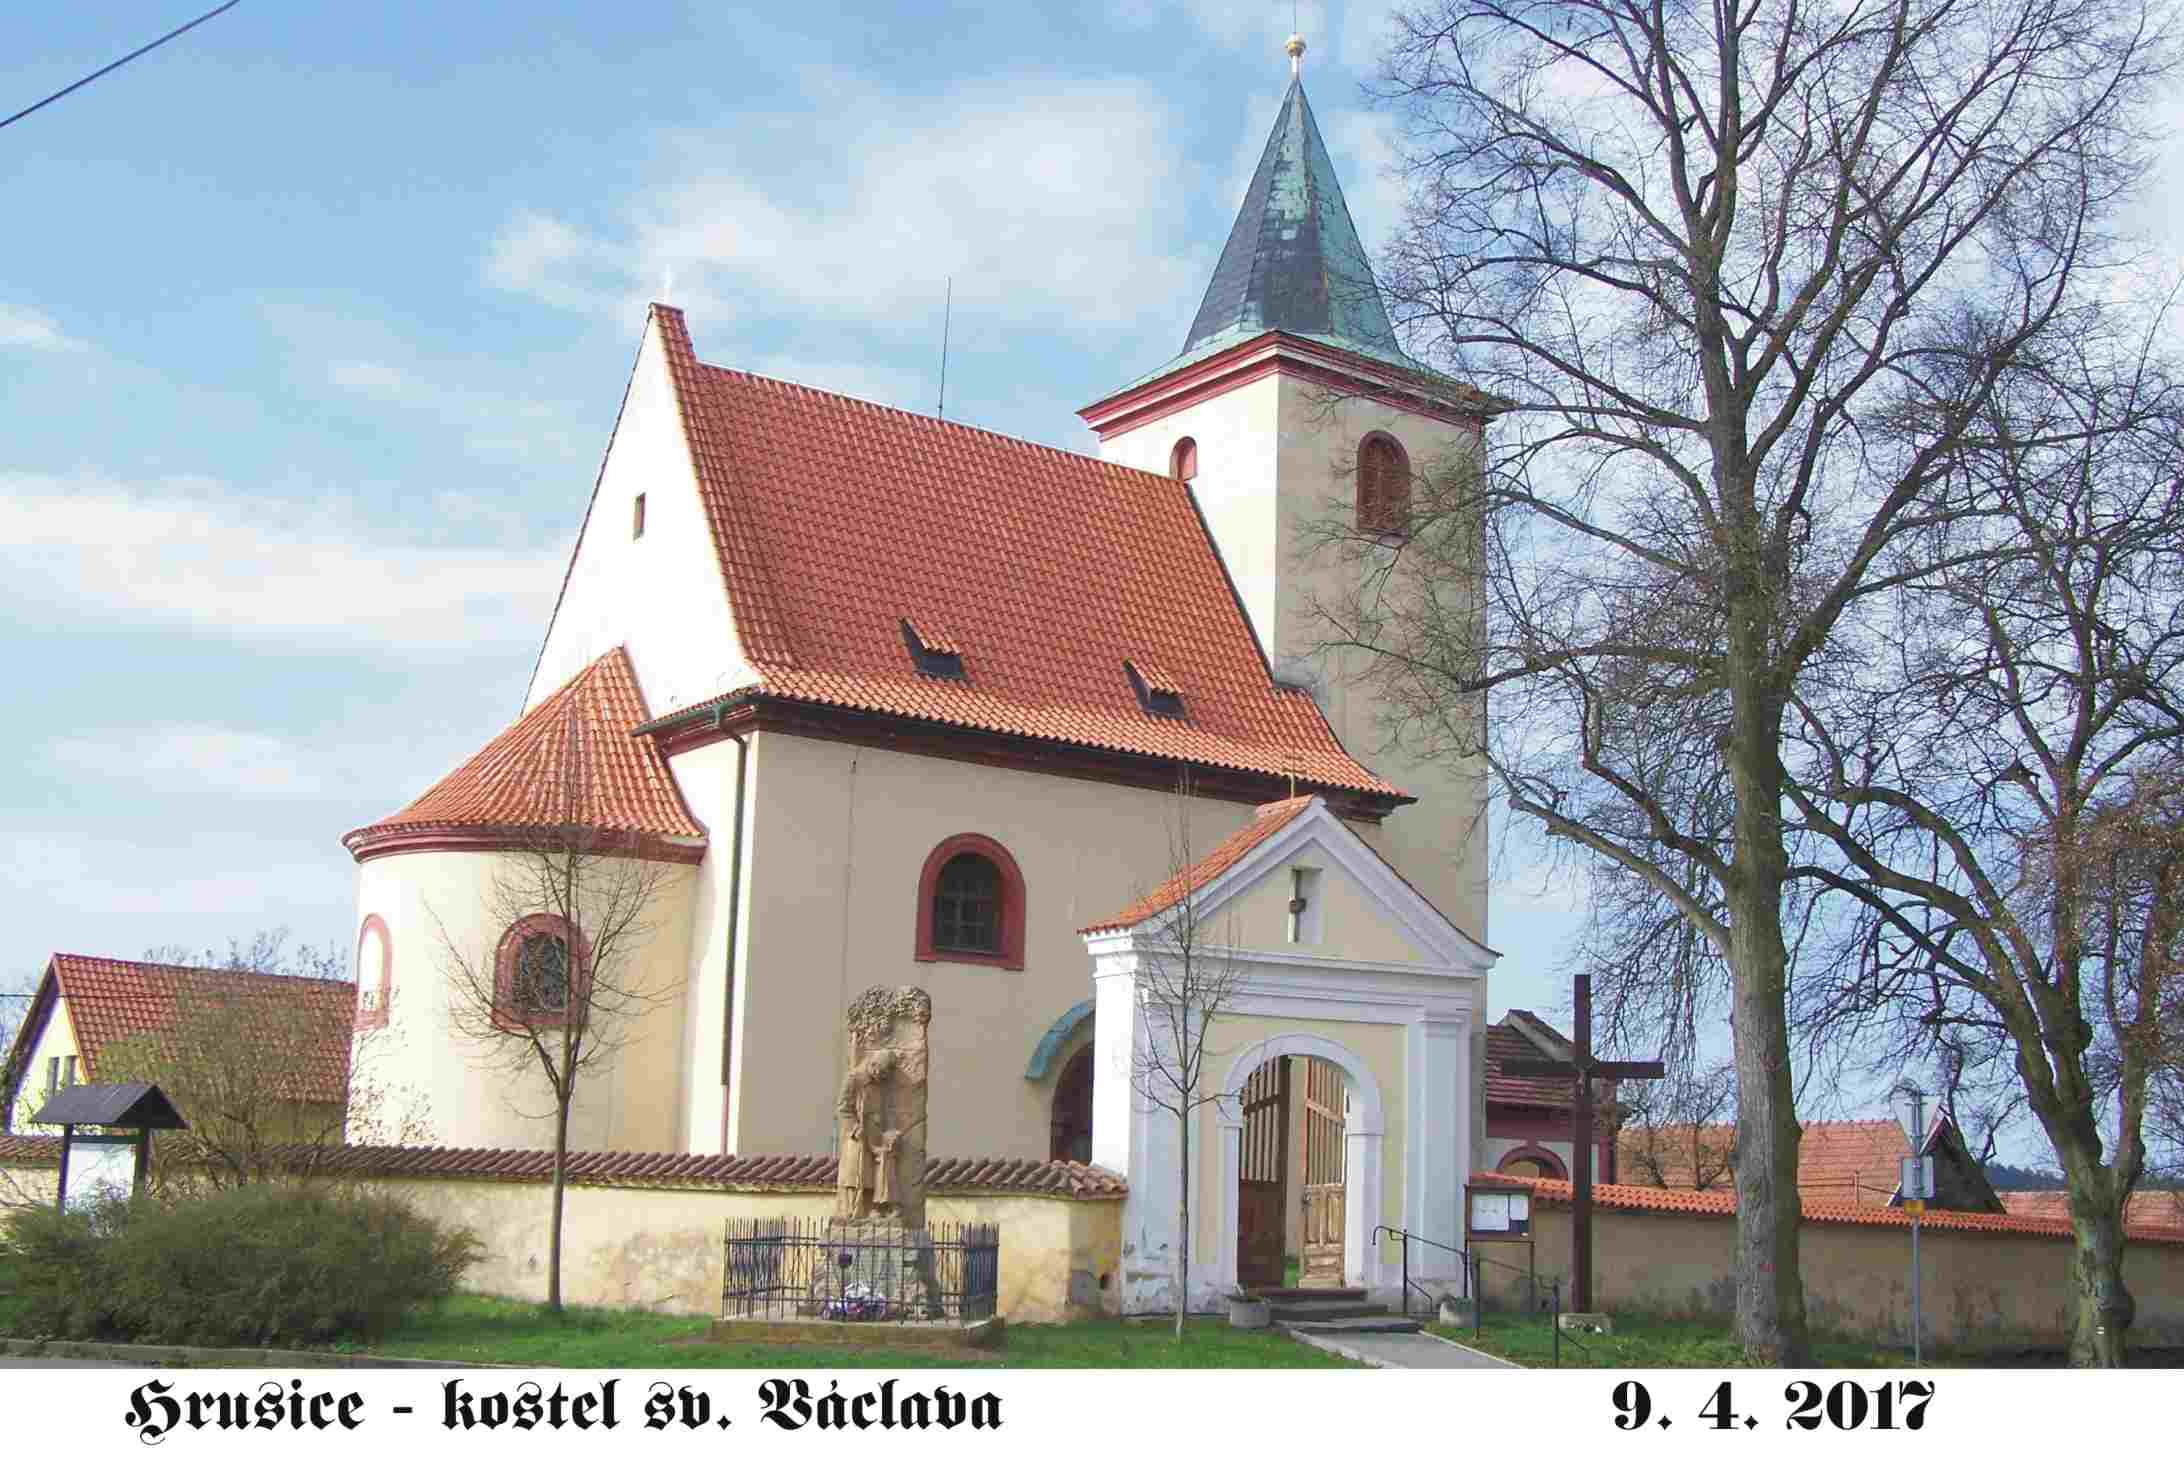 Ladův oblíbený kostelíček sv. Václava